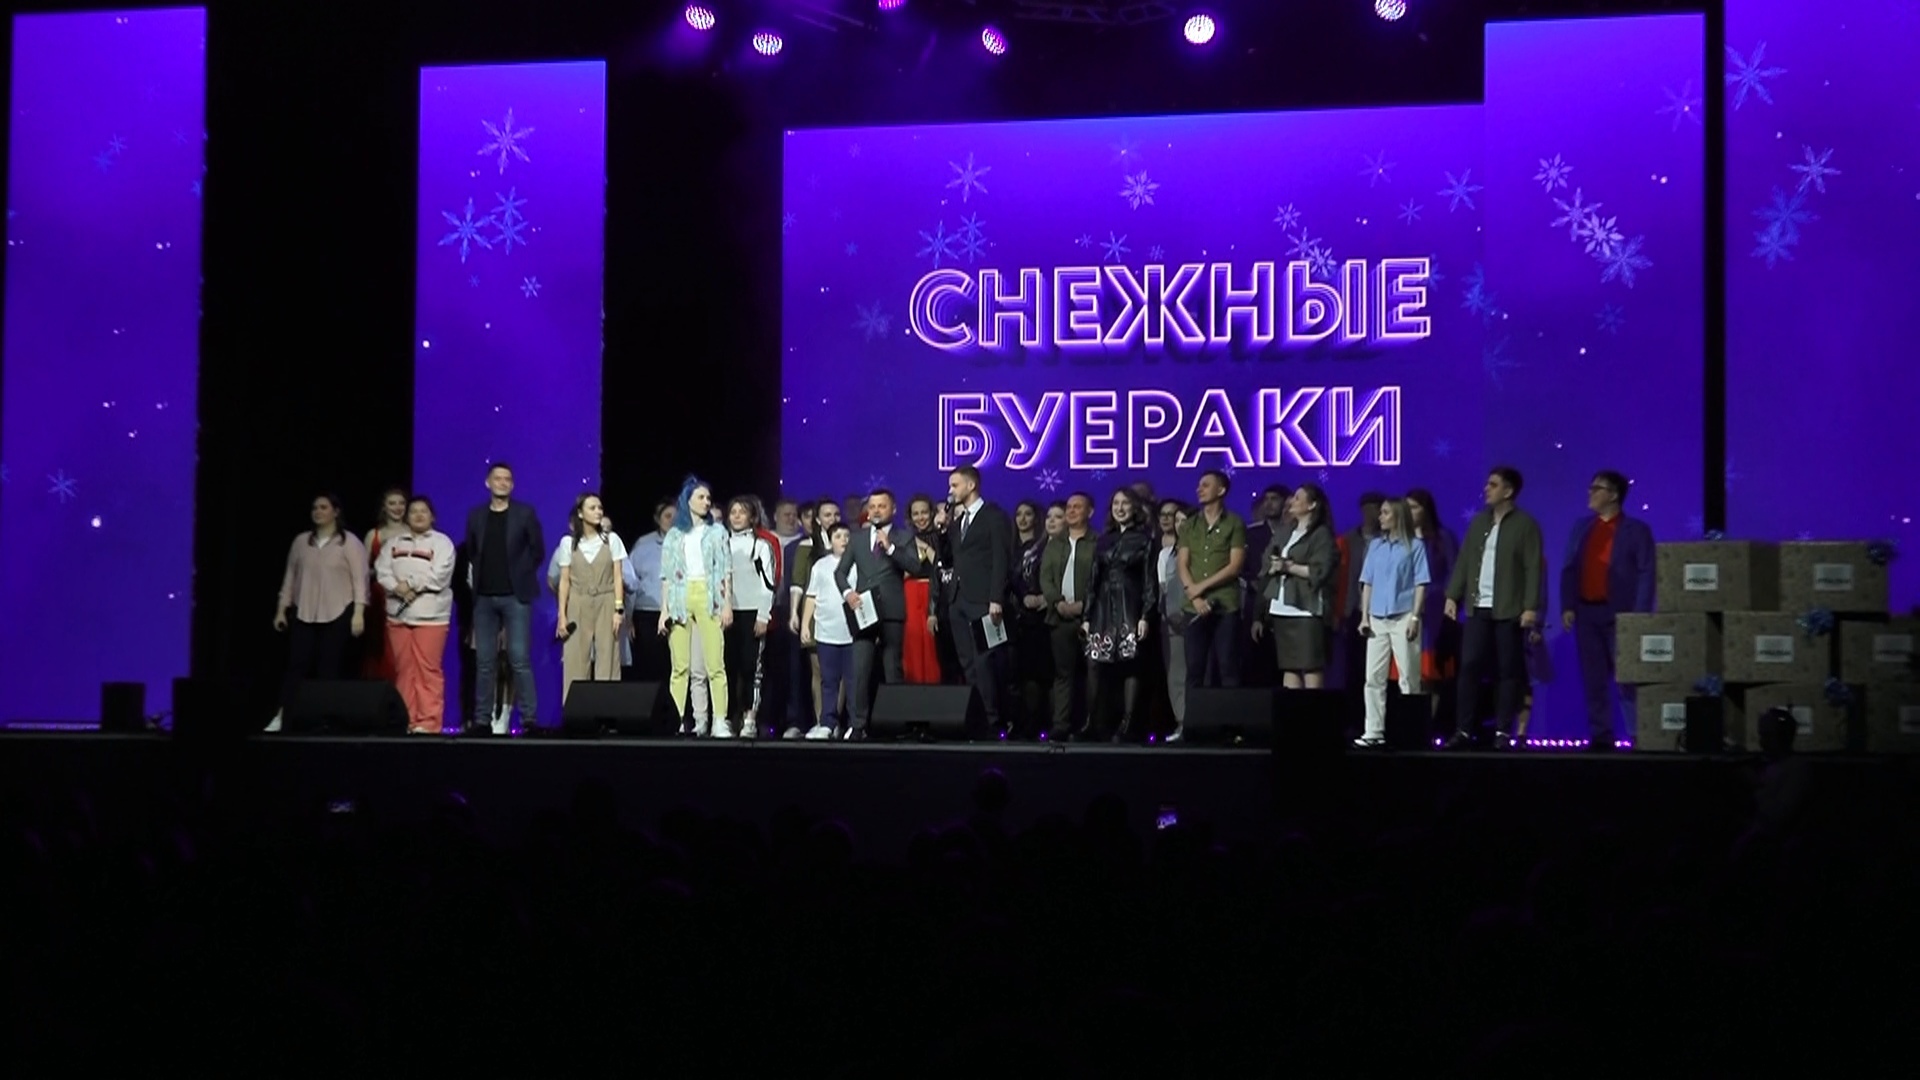 Фестиваль КВН "Снежные буераки" прошел в Челябинске